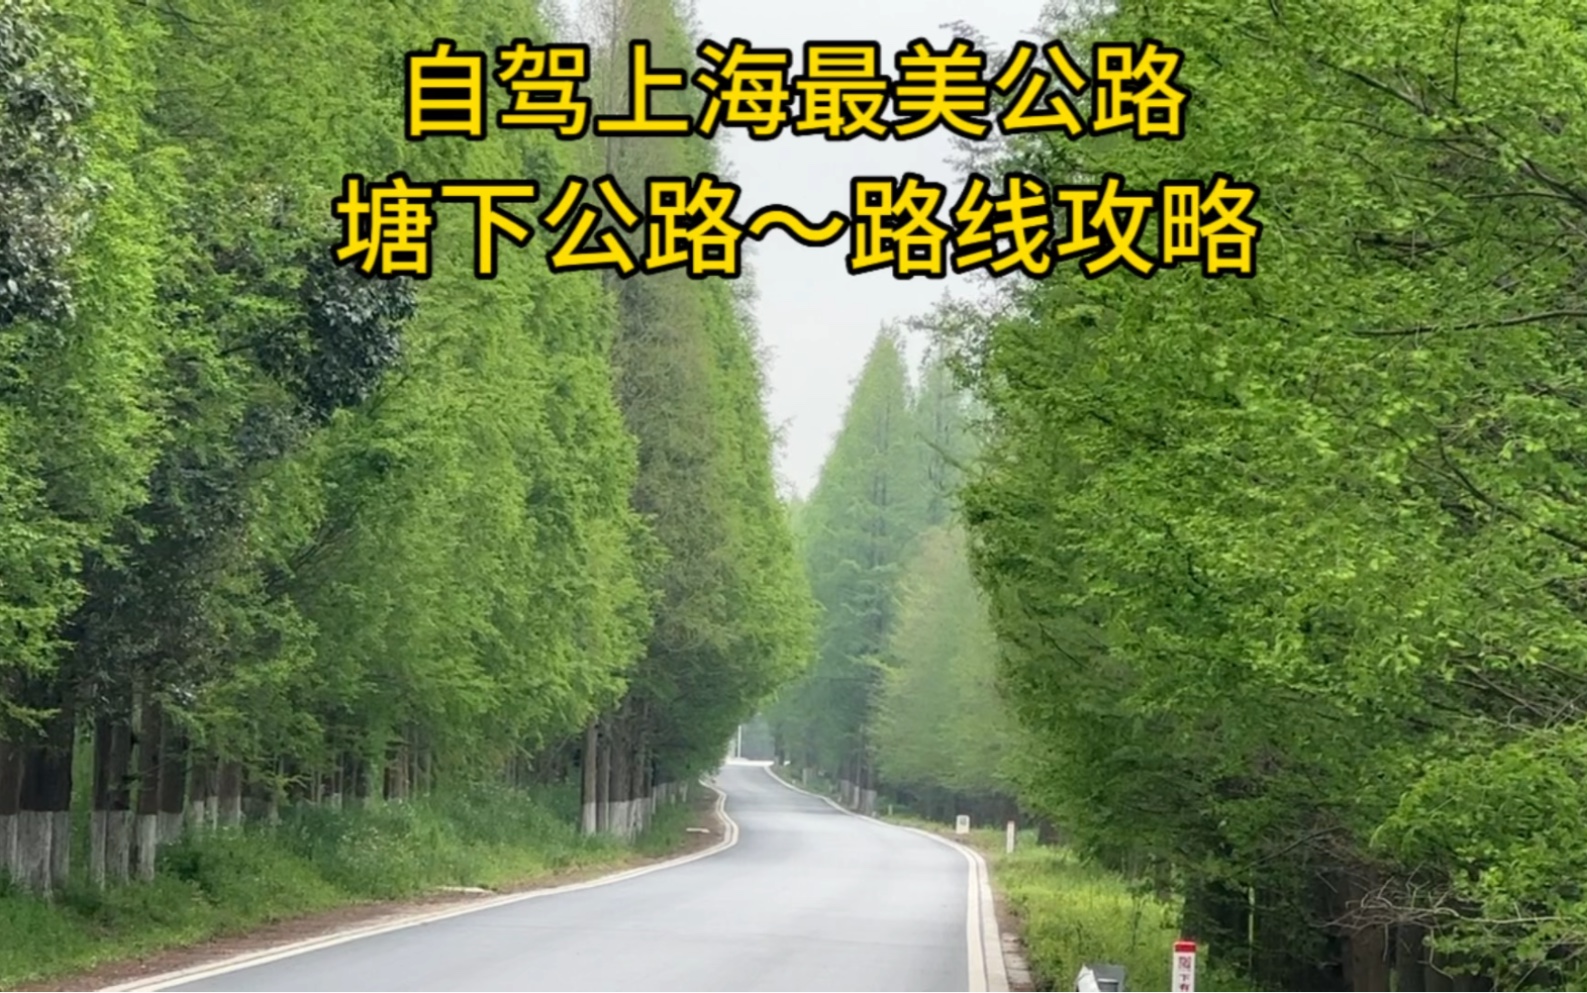 自驾上海最美公路塘下公路，从浦东临港到奉贤海边，风景如画，附自驾游路线攻略